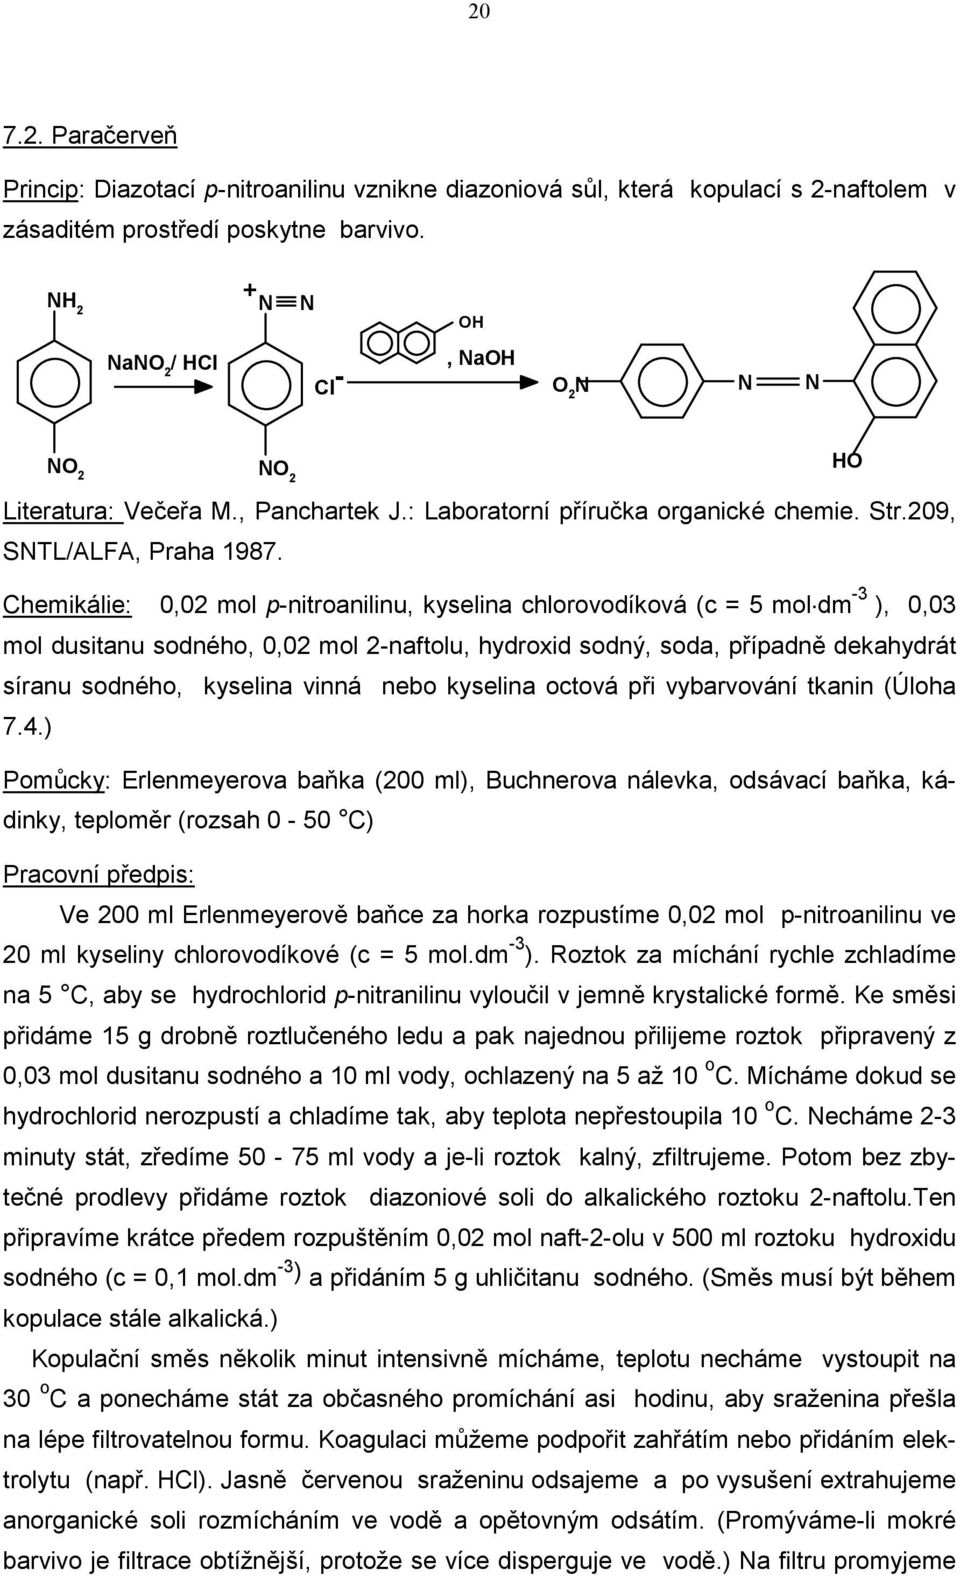 Chemikálie: 0,02 mol p-nitroanilinu, kyselina chlorovodíková (c = 5 mol dm -3 ), 0,03 mol dusitanu sodného, 0,02 mol 2-naftolu, hydroxid sodný, soda, případně dekahydrát síranu sodného, kyselina